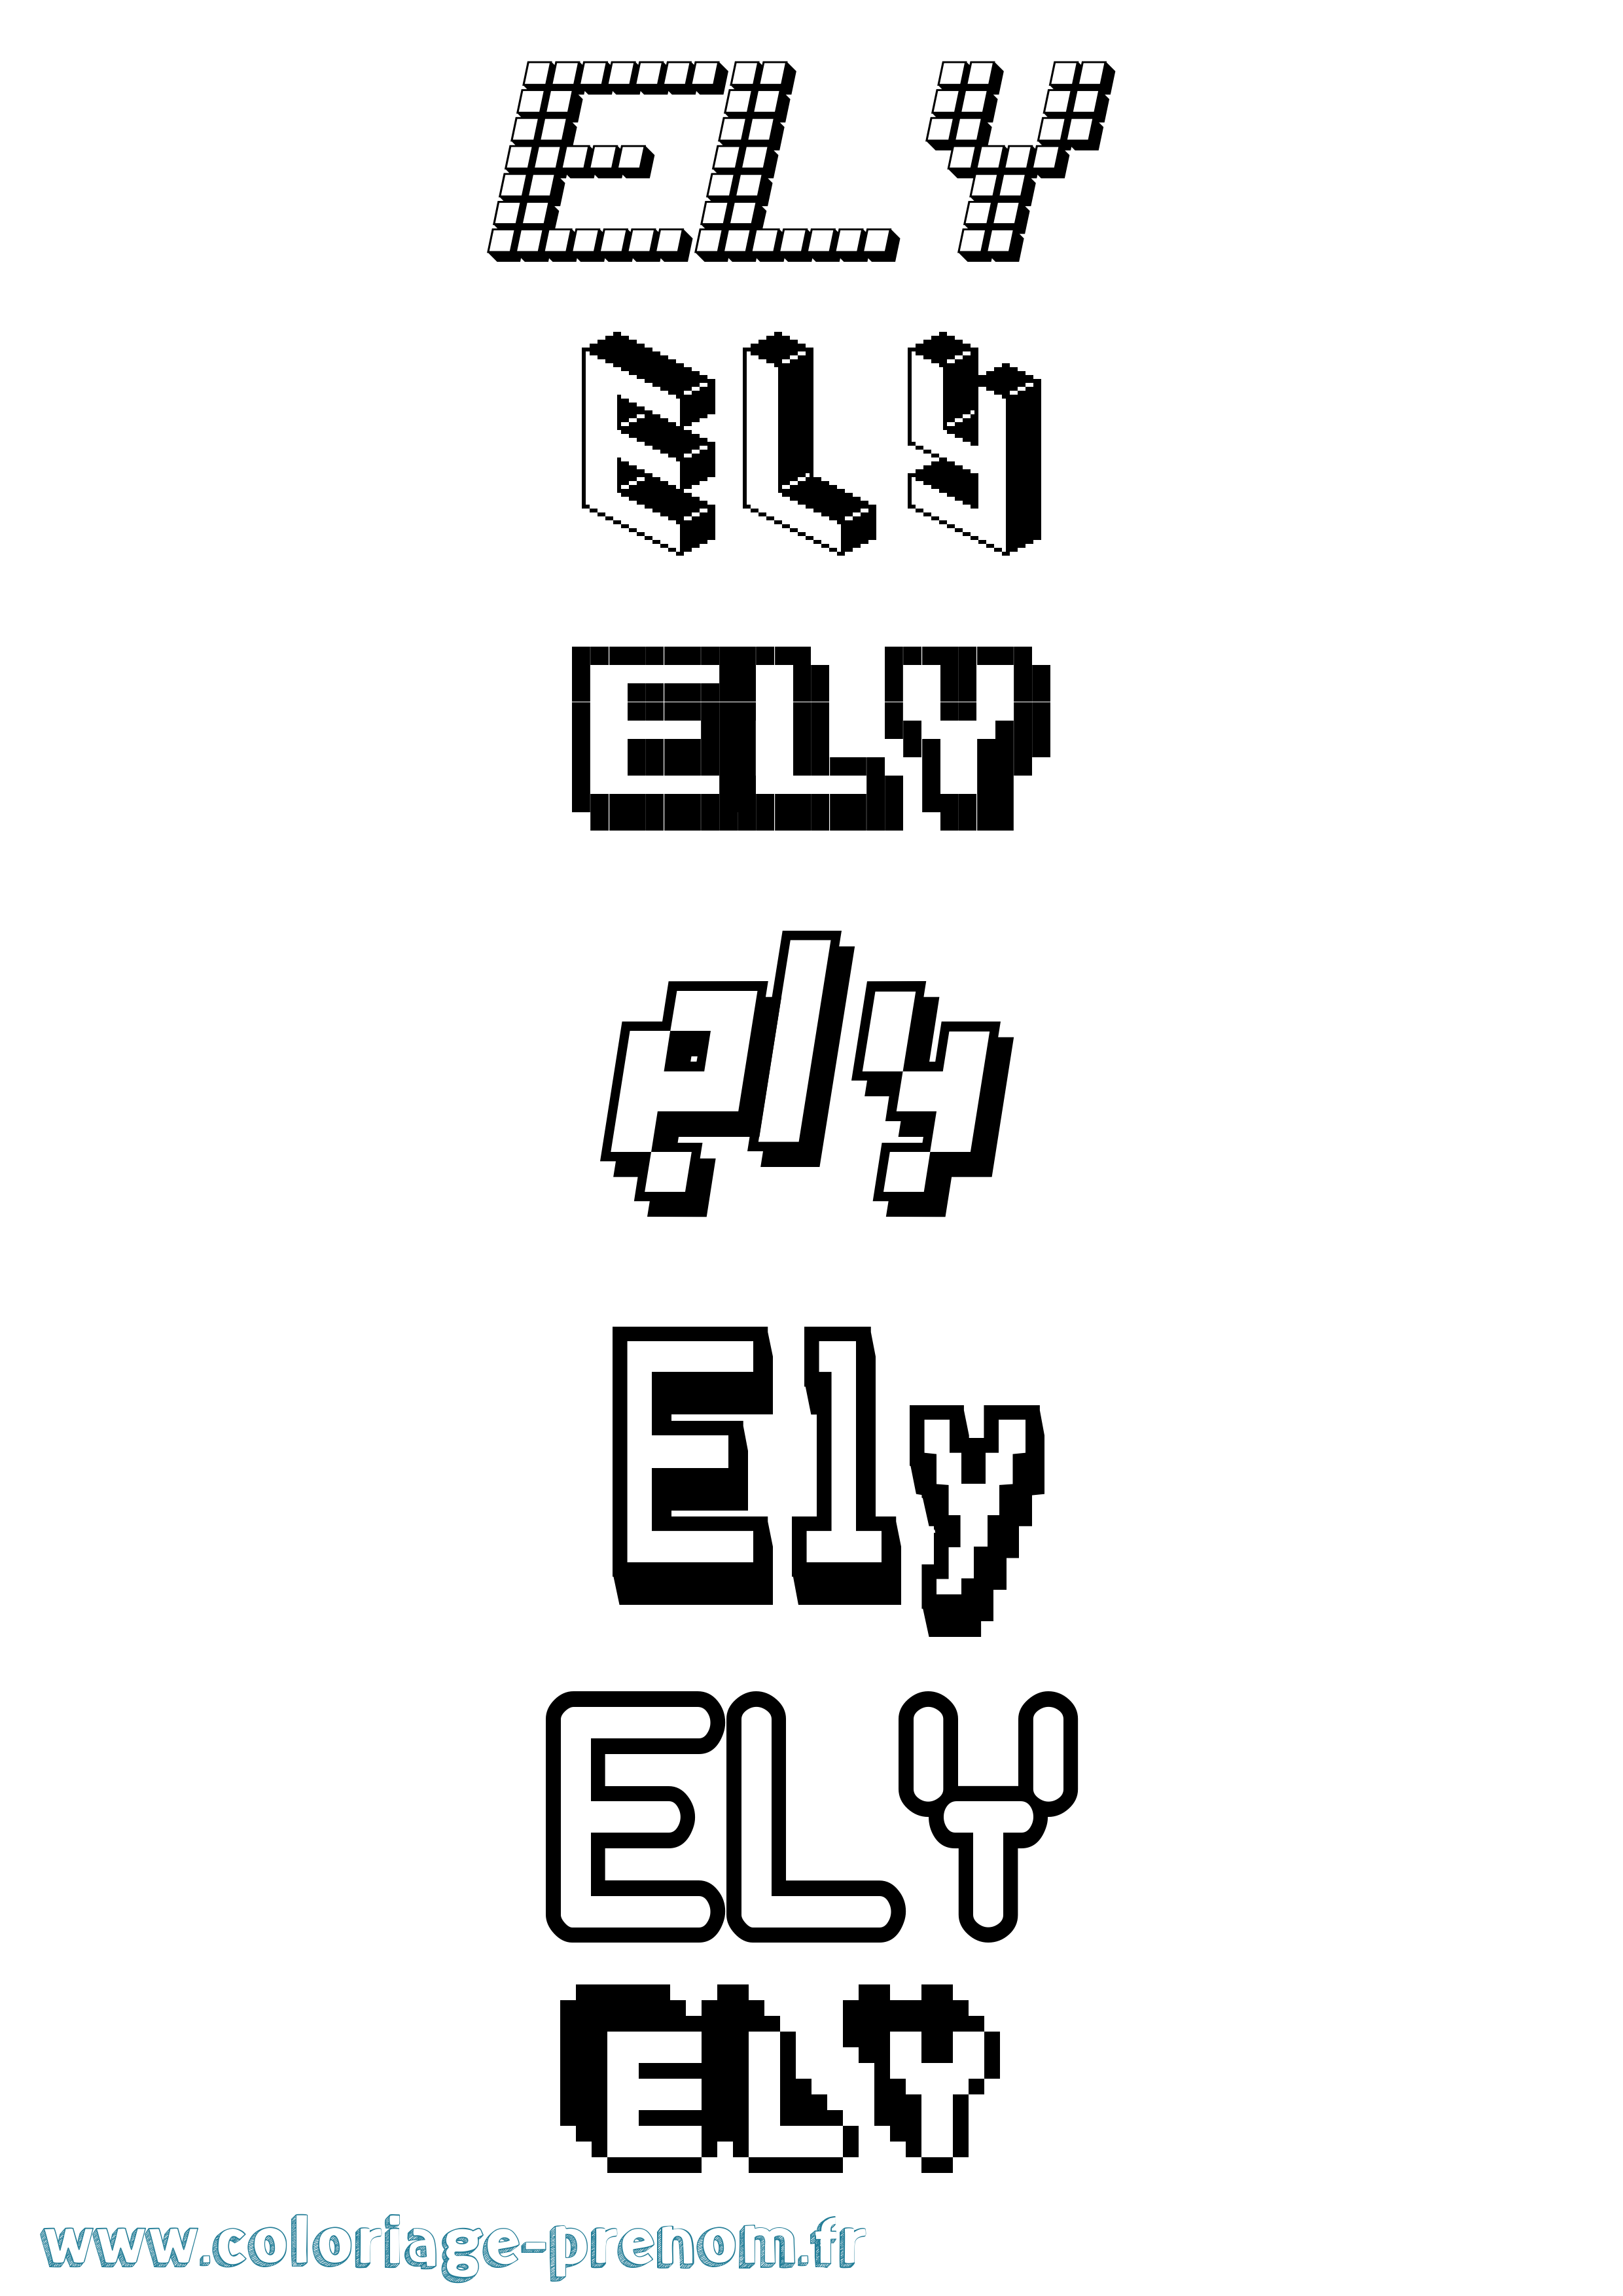 Coloriage prénom Ely Pixel